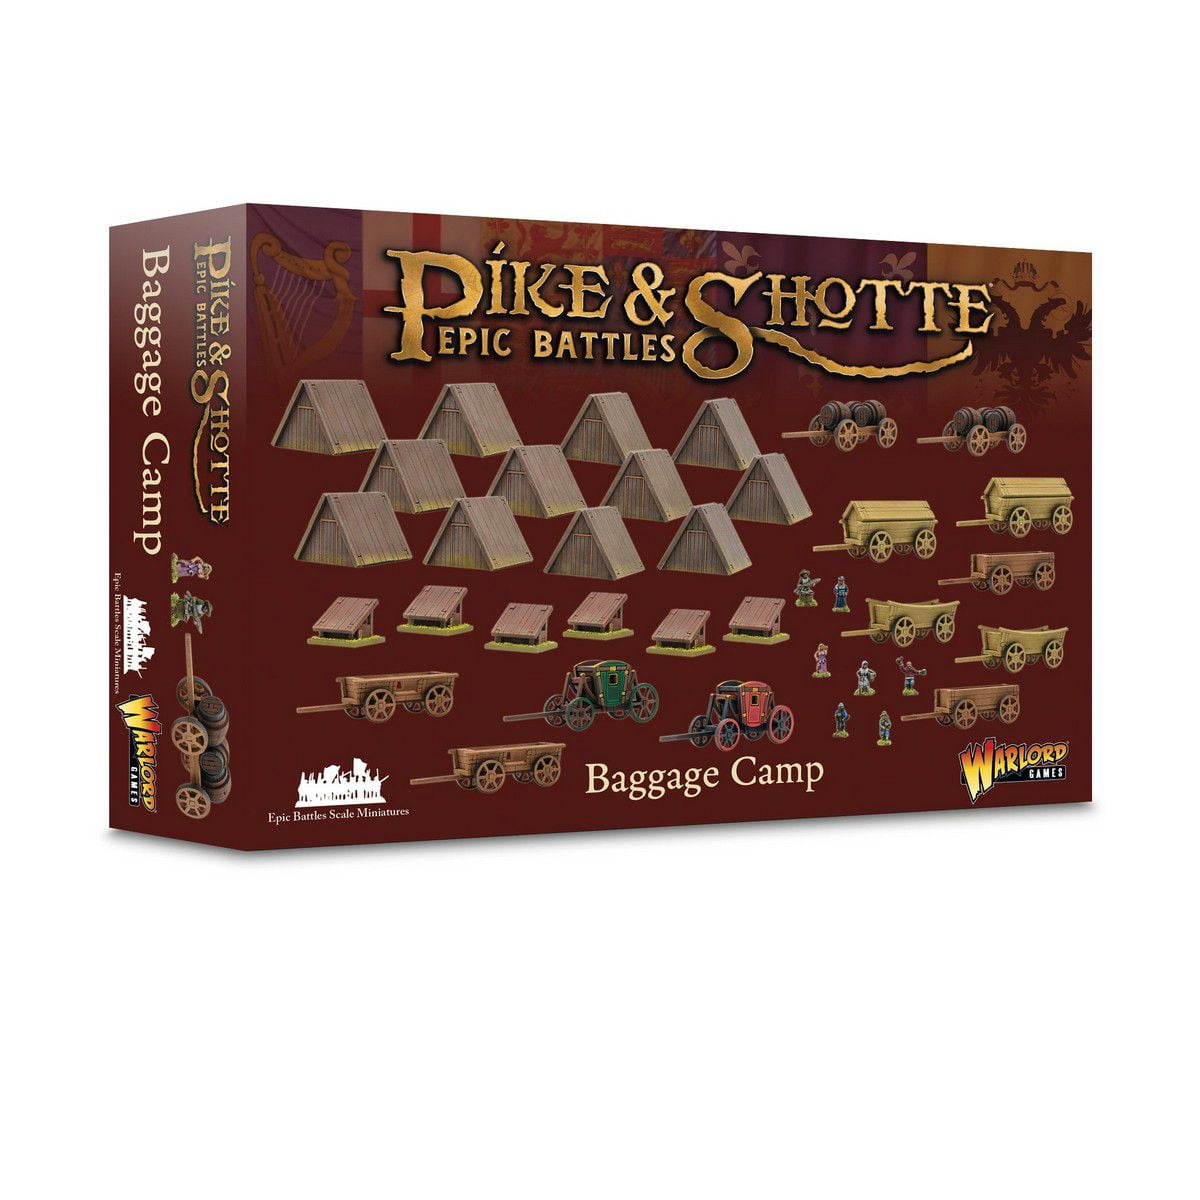 Pike & shotte Epic Battles: Baggage Camp